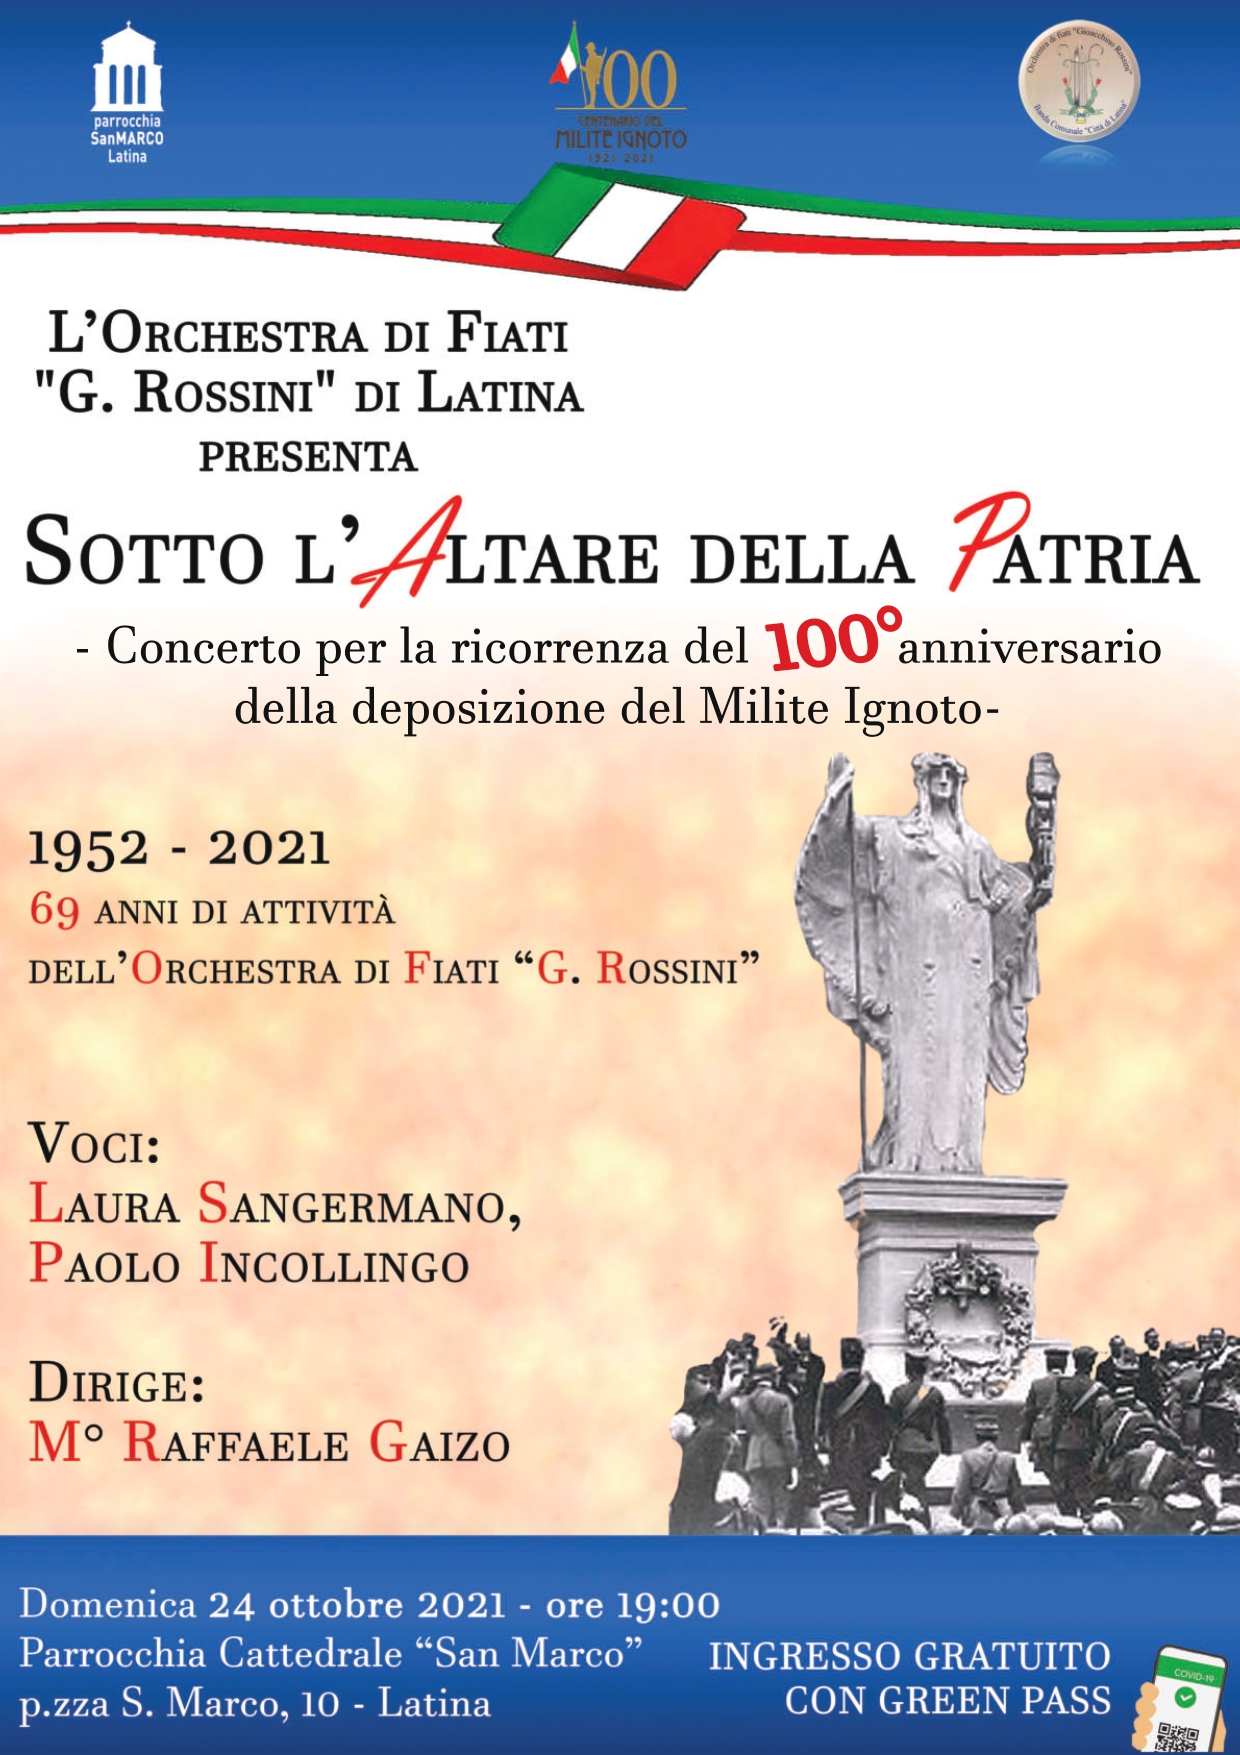 L’orchestra di Fiati G. Rossini in: “Sotto l’Altare della Patria”